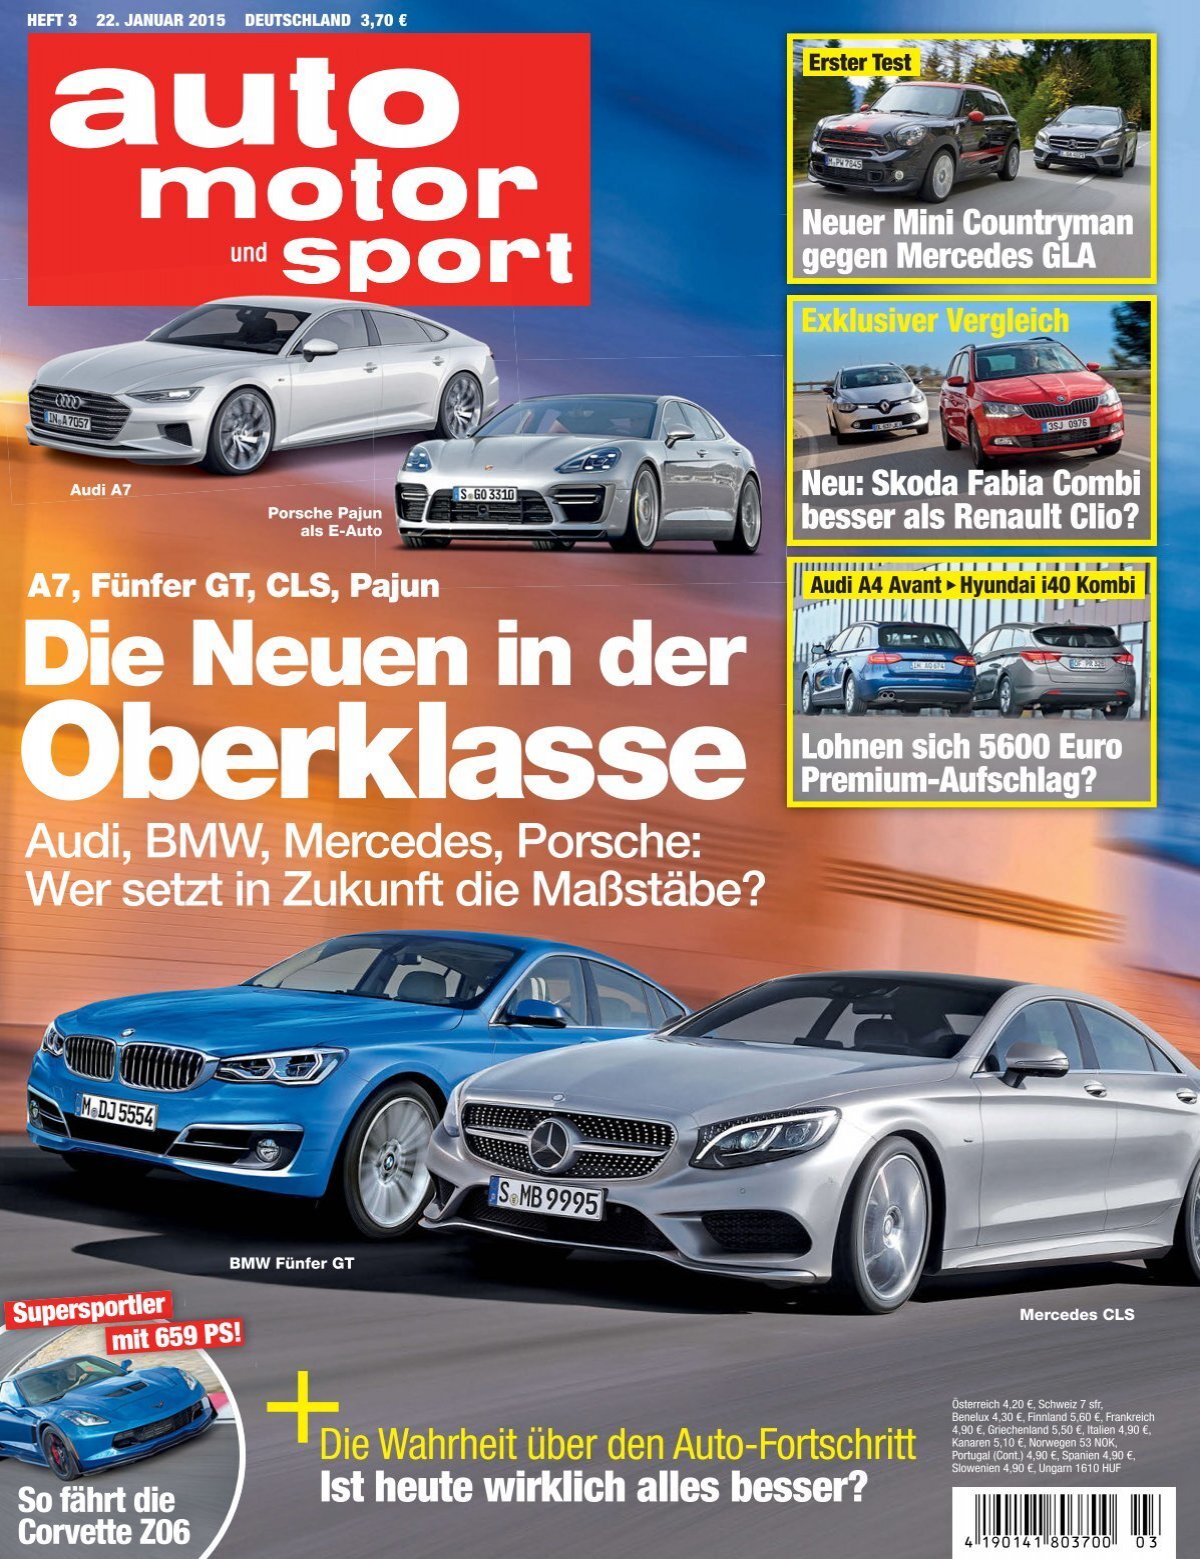 Mal wieder die Handbremse 1.2 - Komplettaustausch notwendig? - Seite 2 -  Technik - Audi A2 Club Deutschland